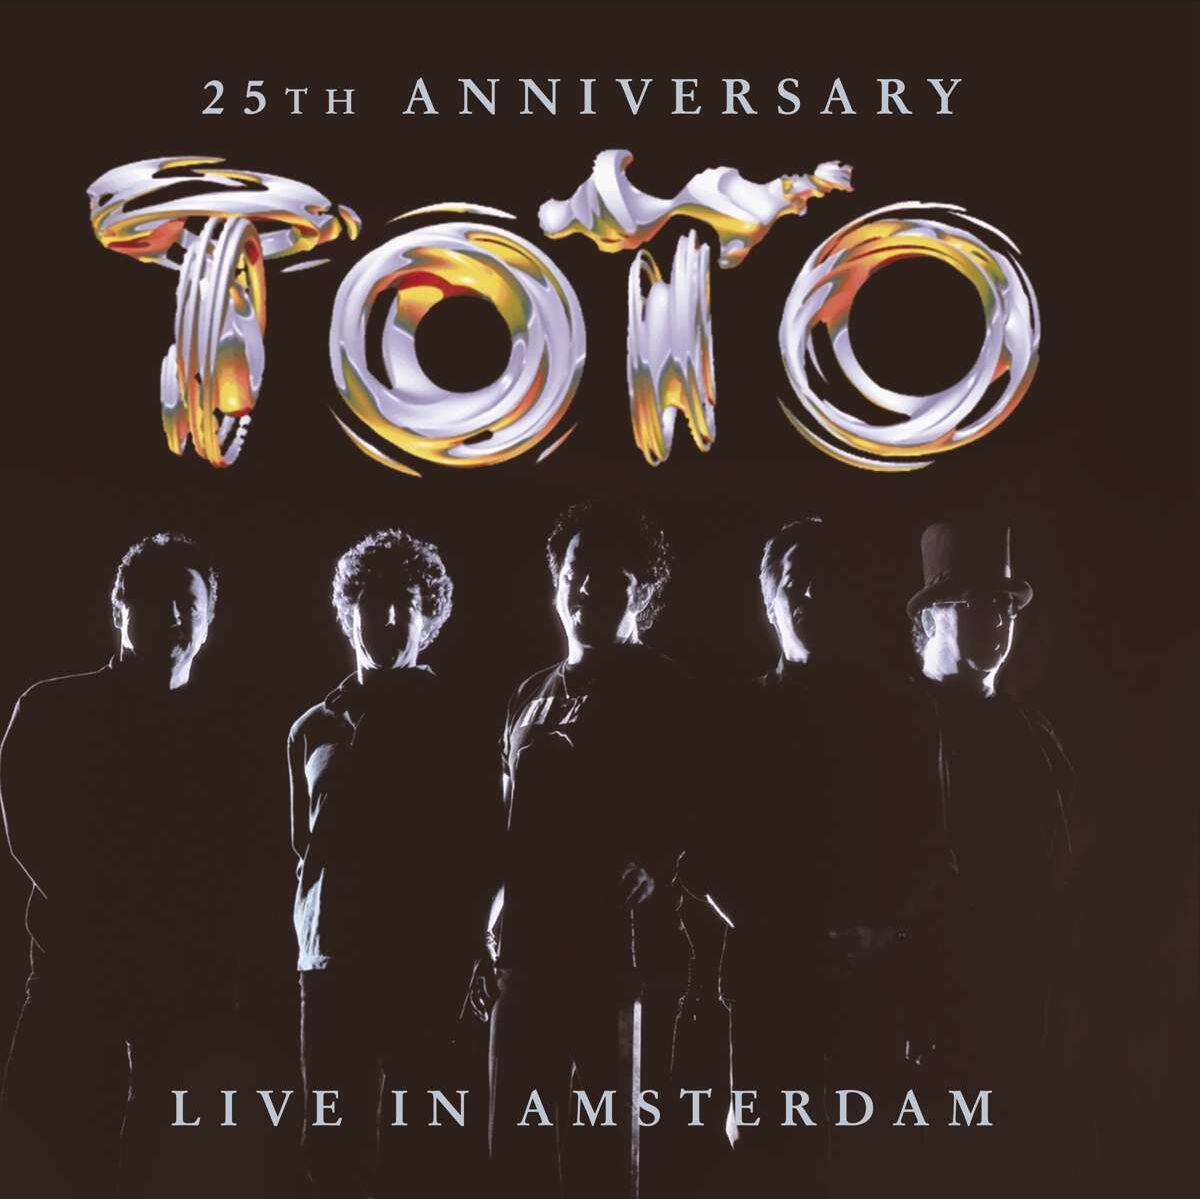 Toto 25th anniversary - Live in Amsterdam CD multicolor